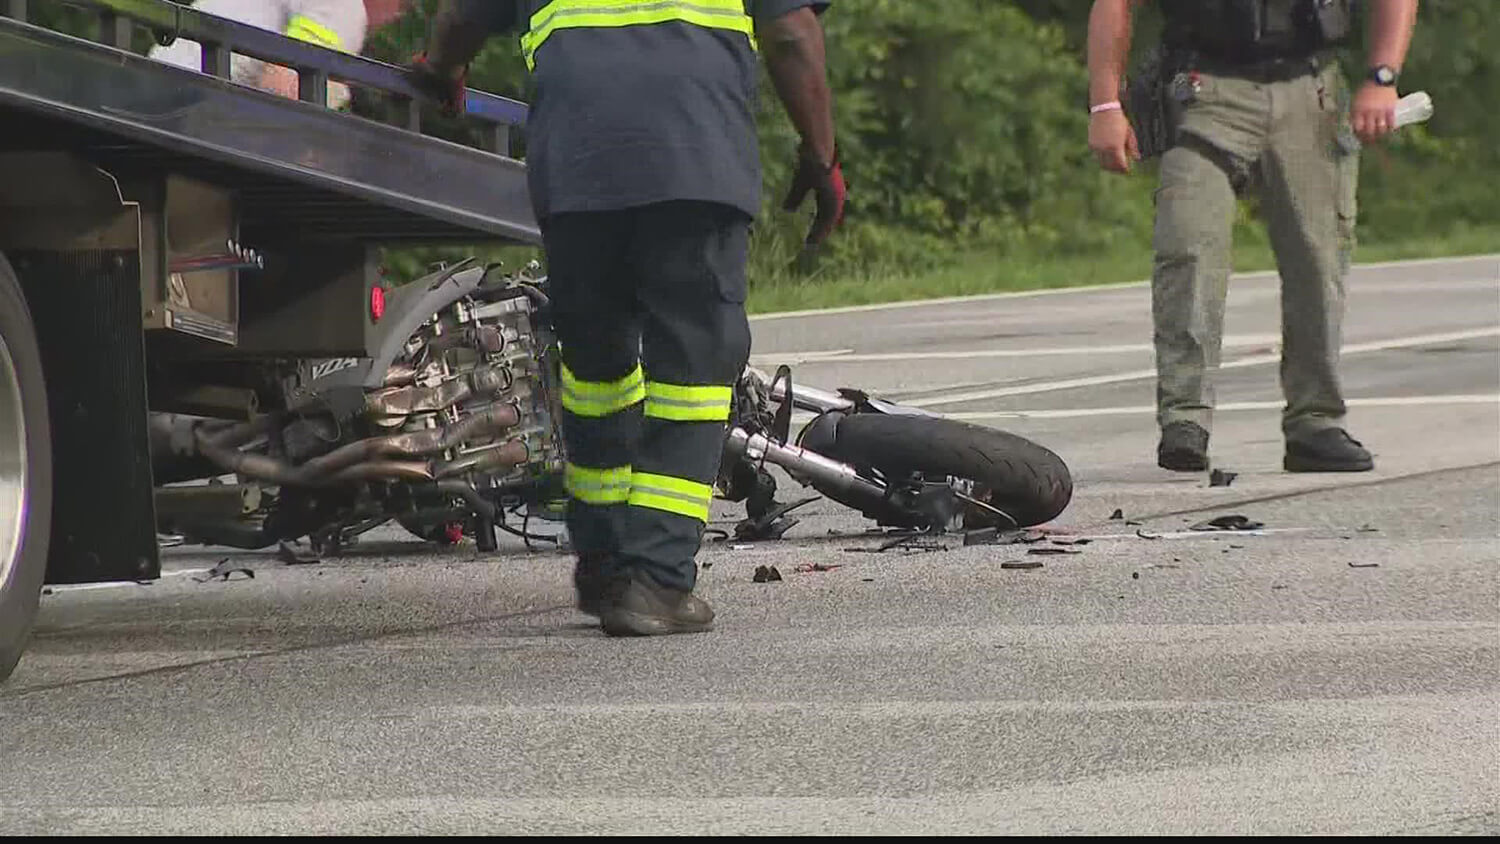 Motorbike crash scene